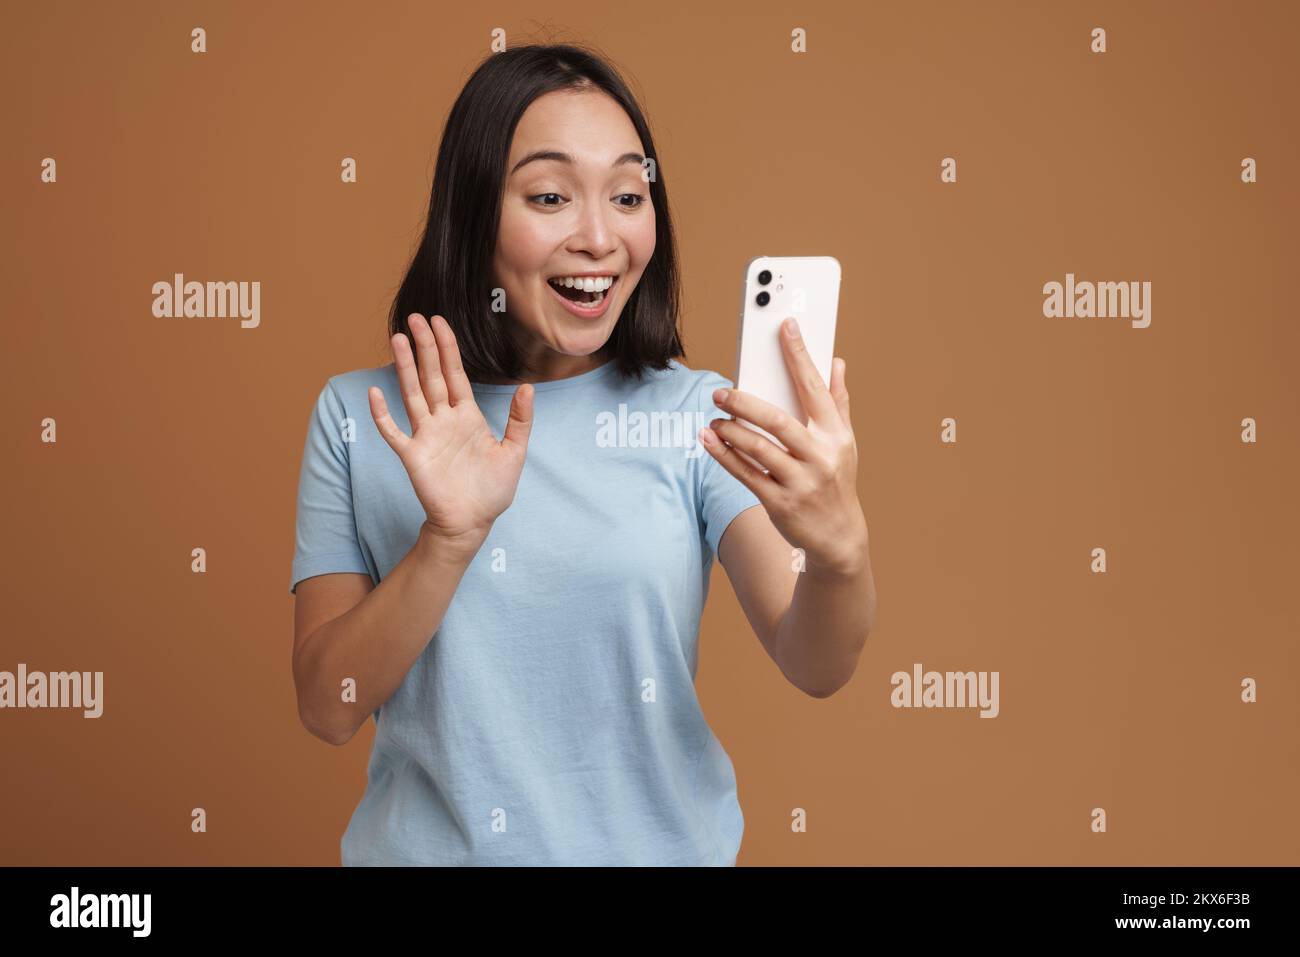 Excitada mujer asiática con camiseta gesturing mientras utiliza el teléfono celular aislado sobre fondo beige Foto de stock